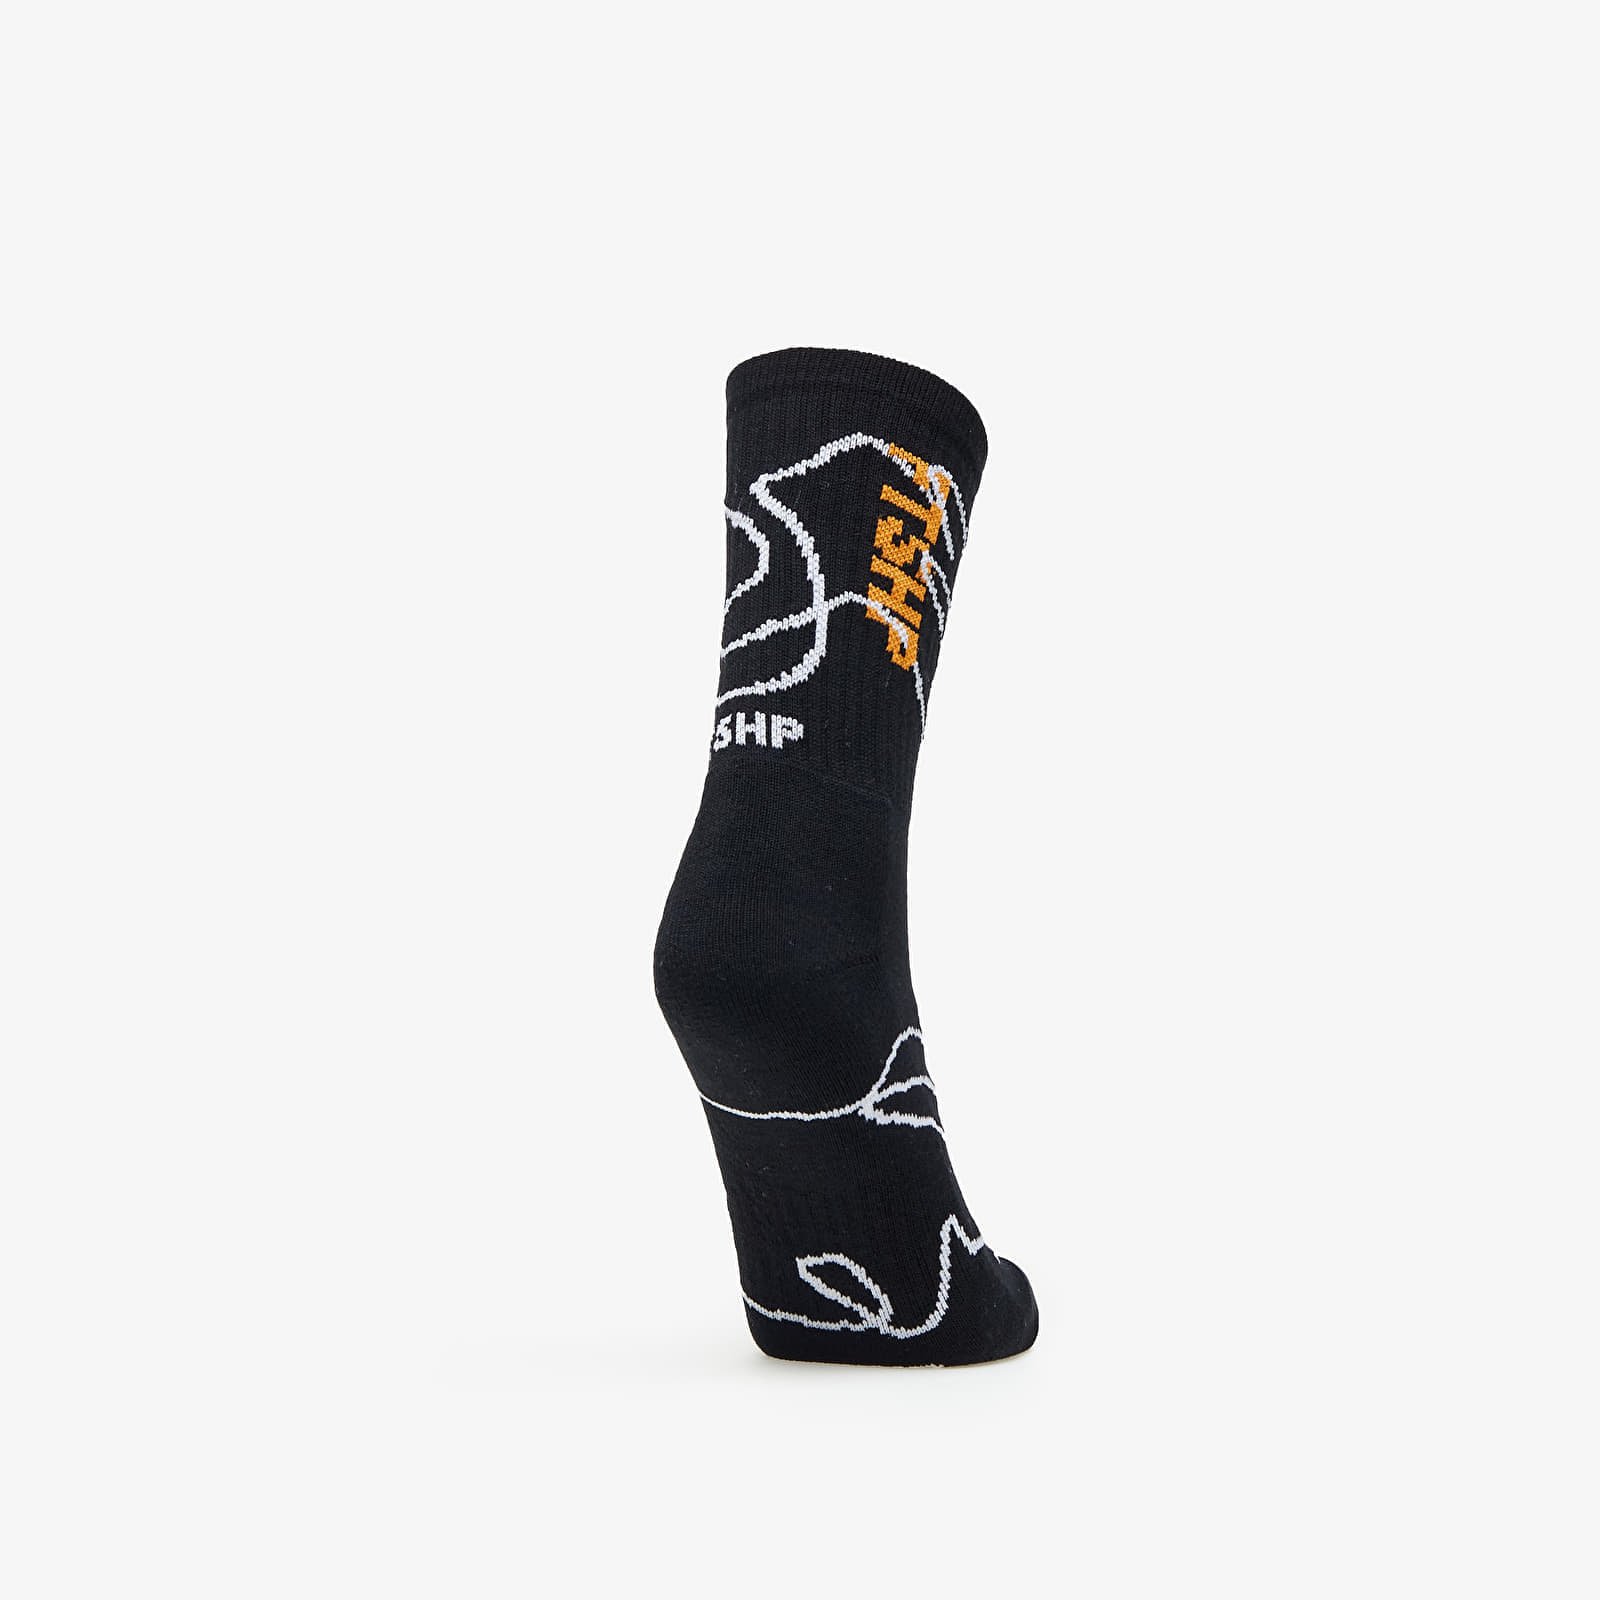 The Skateboard Socks